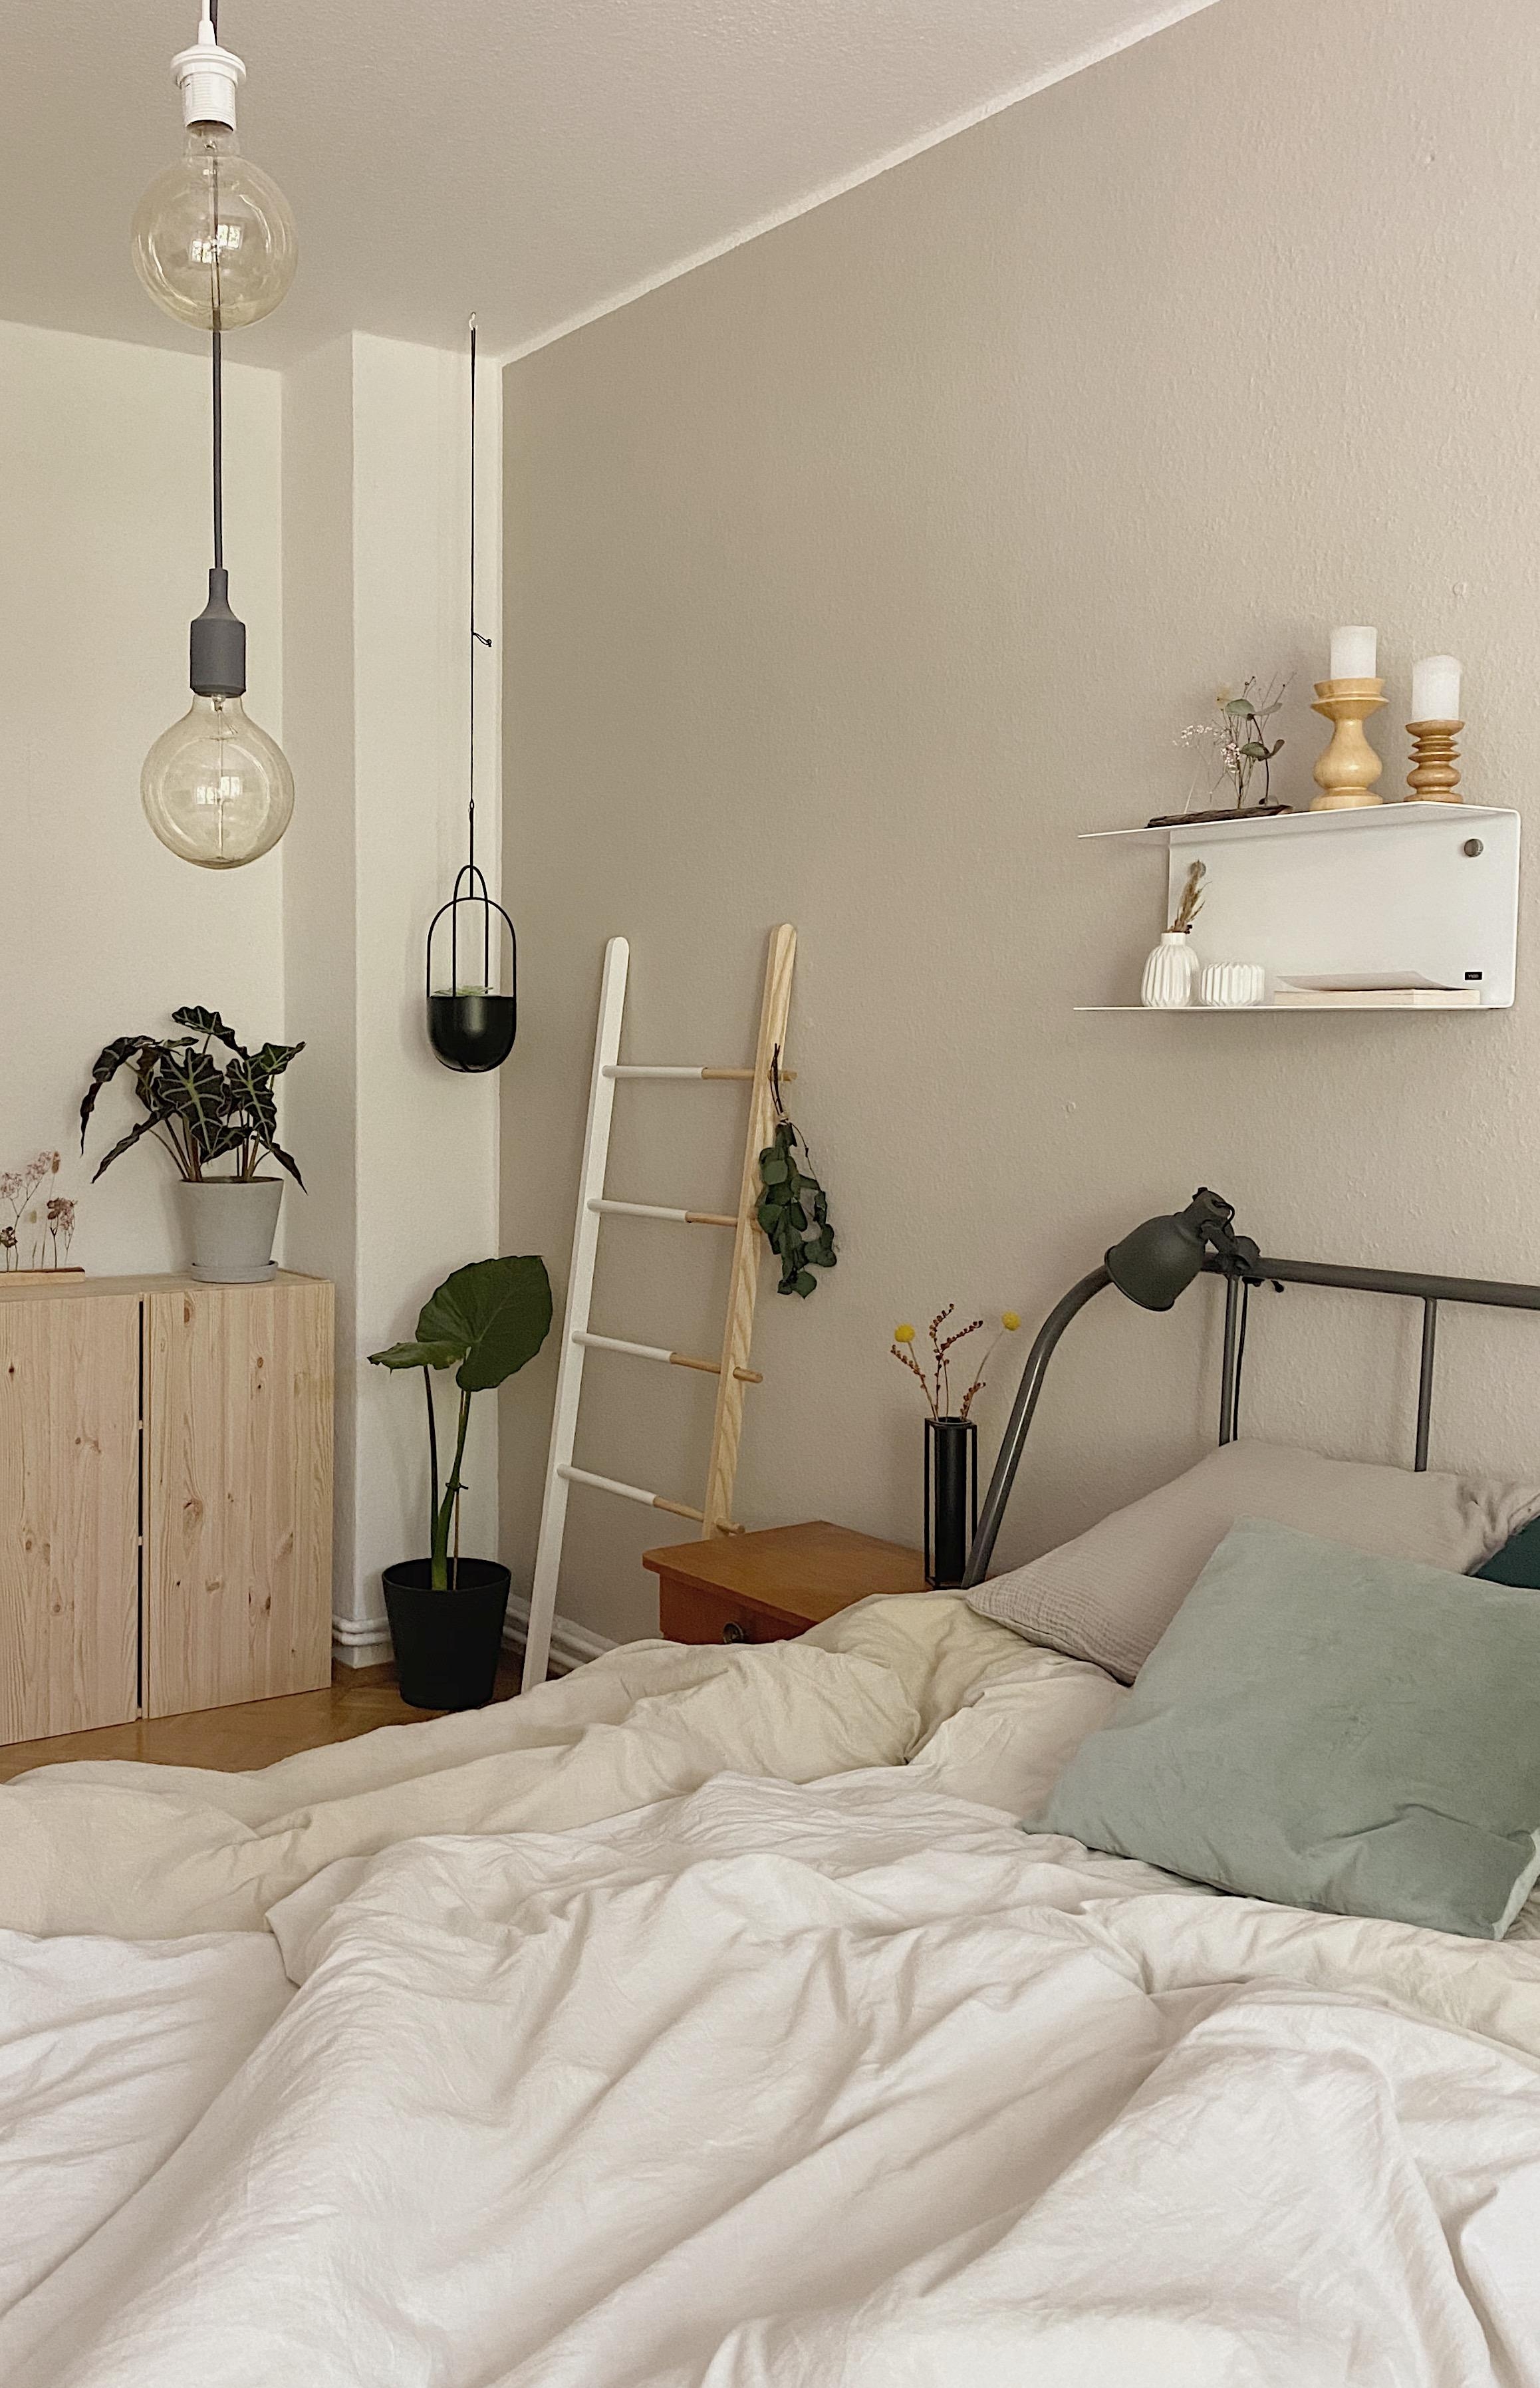 Ein kleiner Einblick in unser Schlafzimmer! #bedroomdetails #bedroomdecor #bedroom #scandistyle #nordicliving